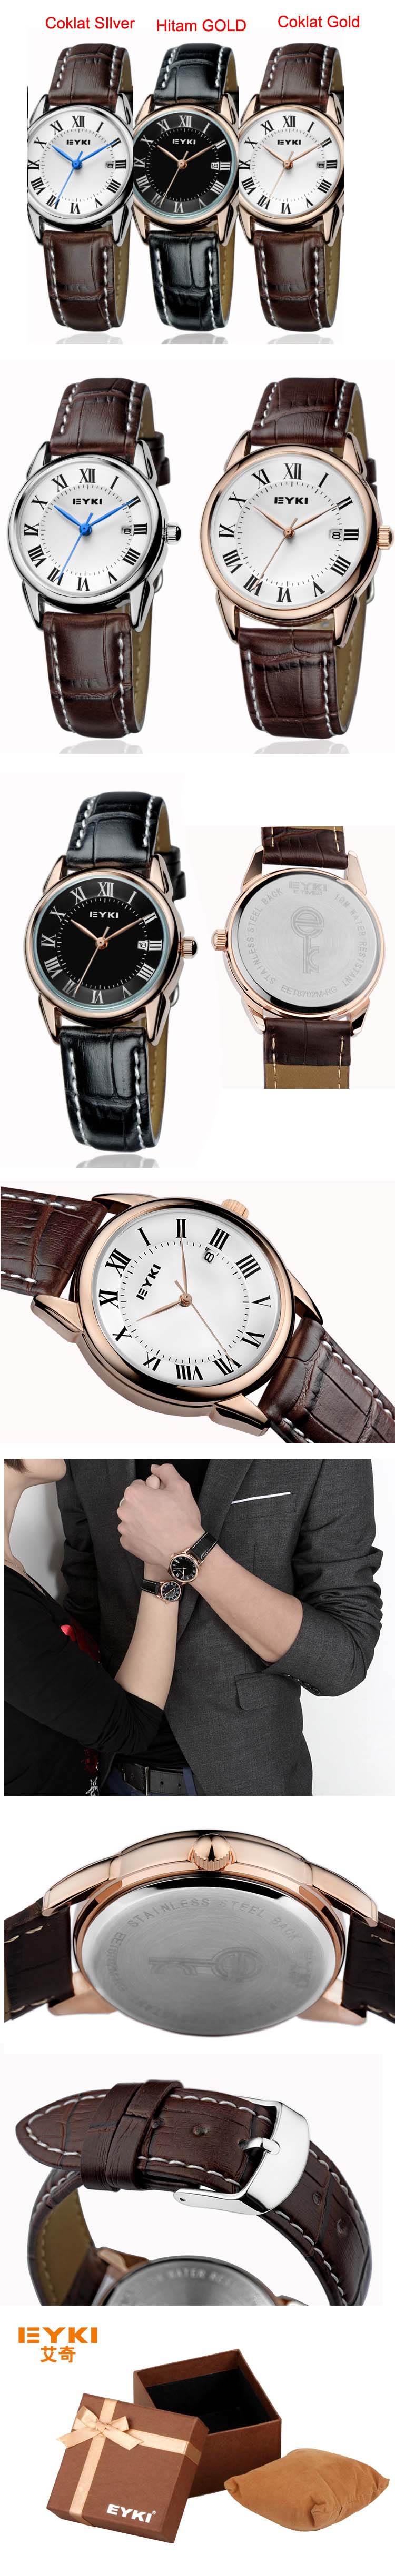 jual jam tangan kulit untuk pria merk eyki import